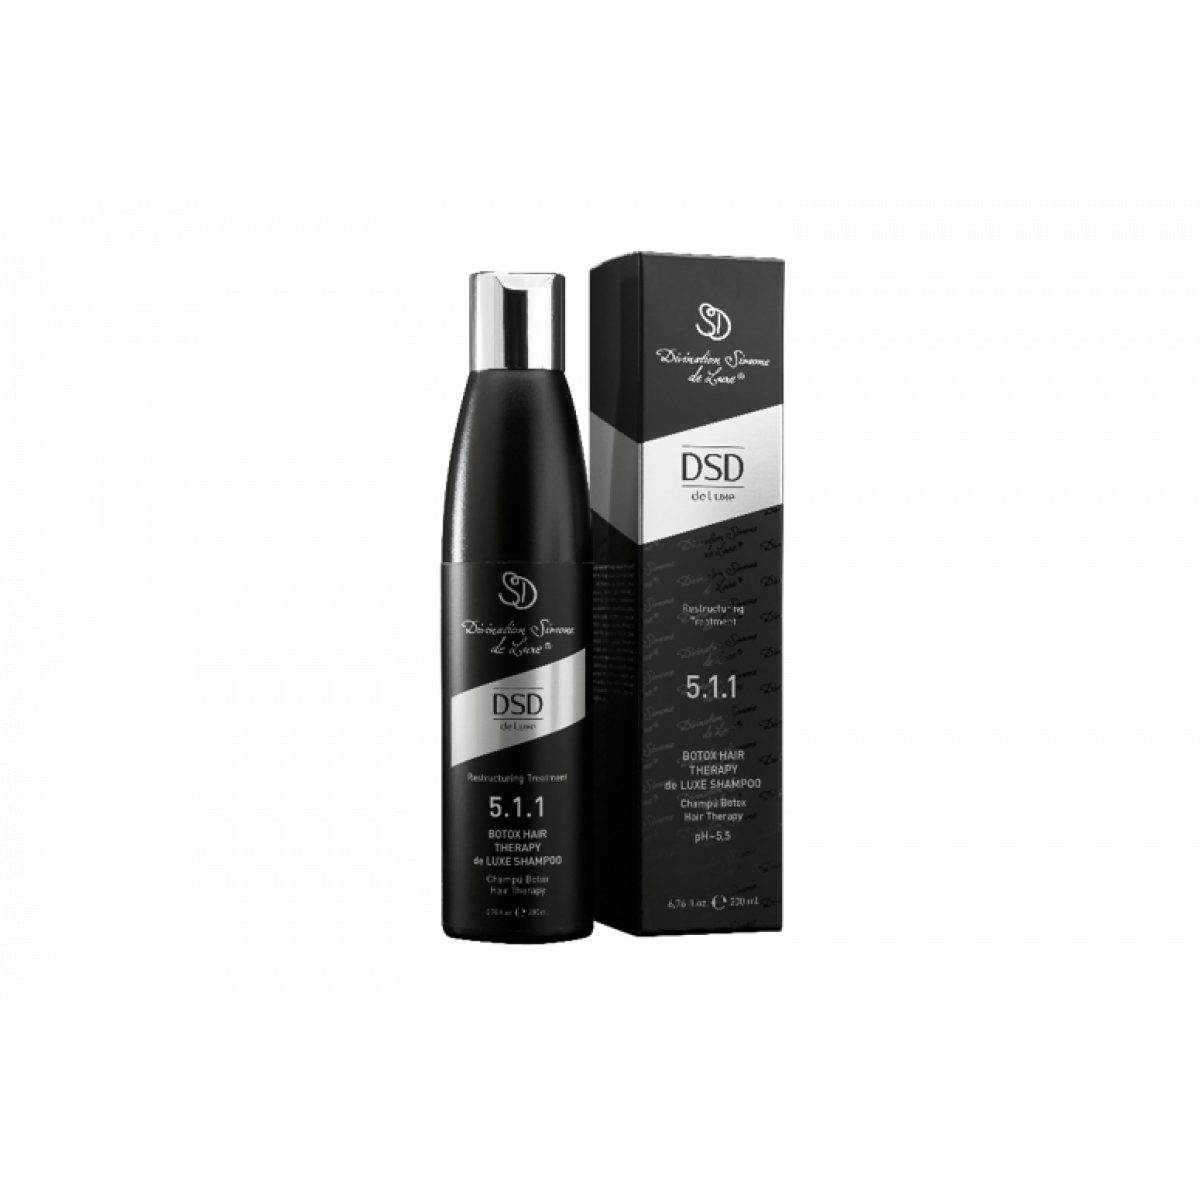 DSD DE LUXE 5.1.1 Botox Hair Therapy de Luxe Shampoo